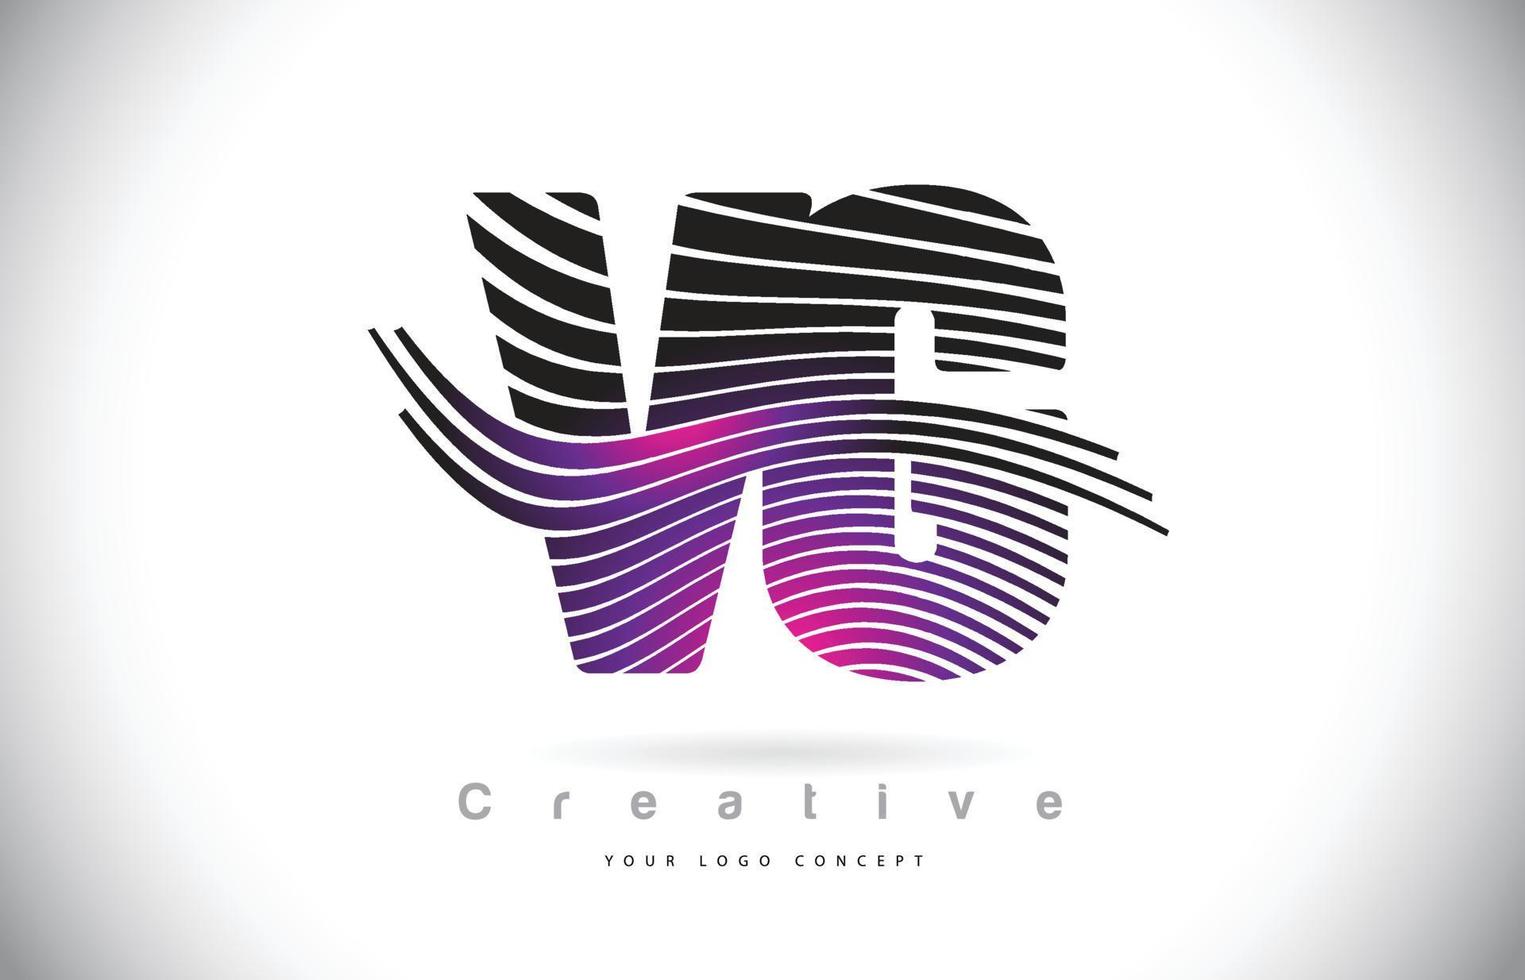 Création de logo de lettre de texture vg vg zebra avec des lignes créatives et swosh de couleur violet magenta. vecteur